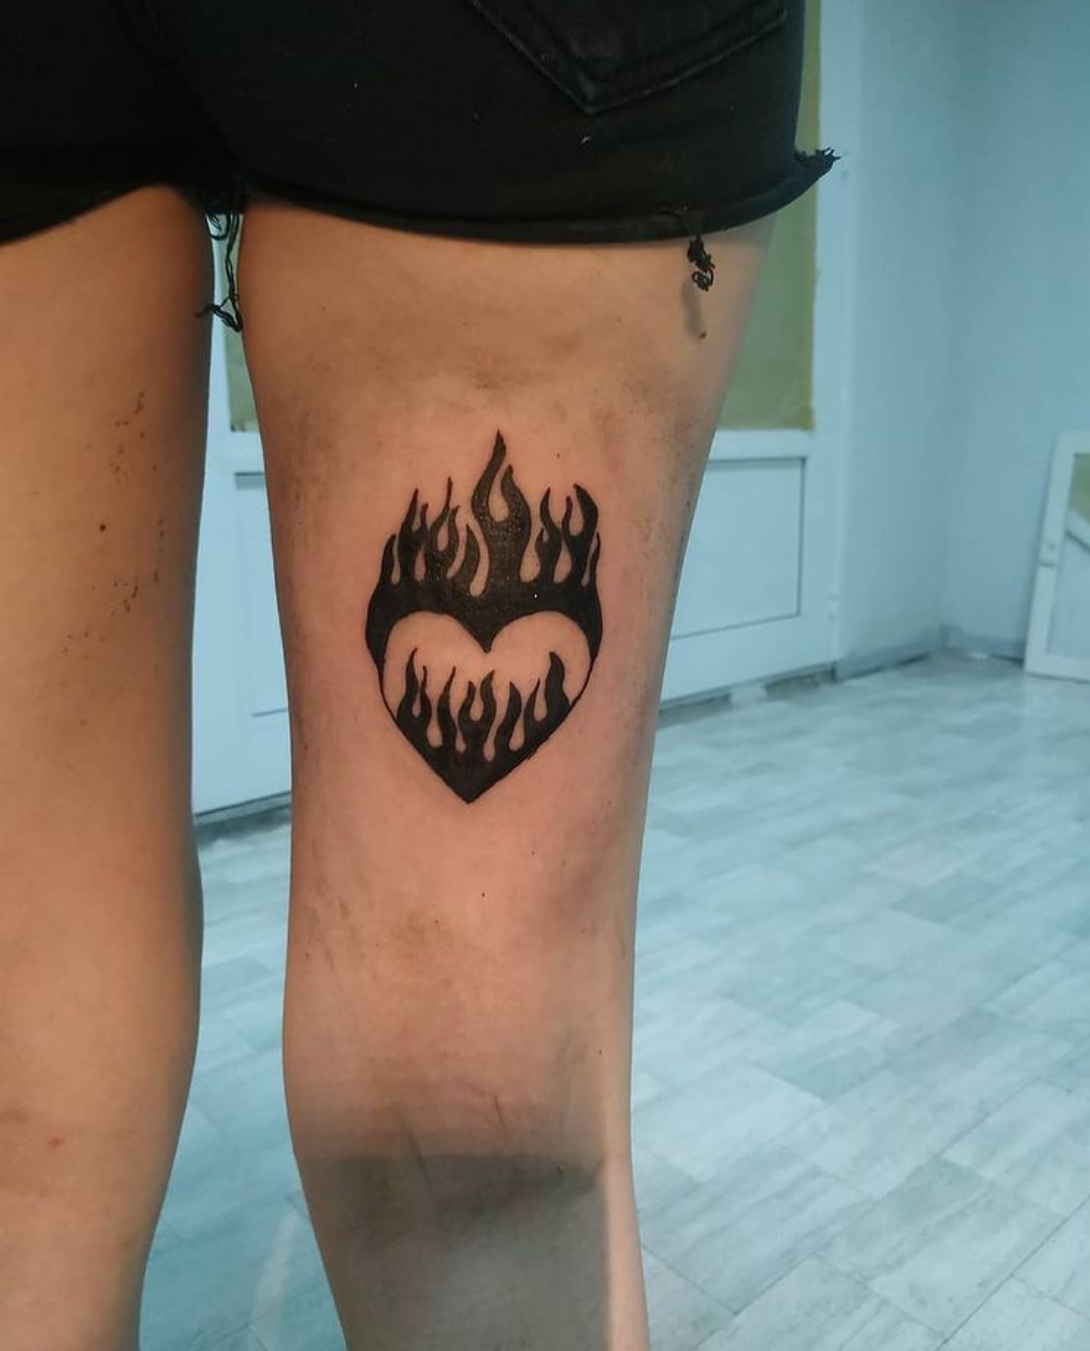 flame tattoo